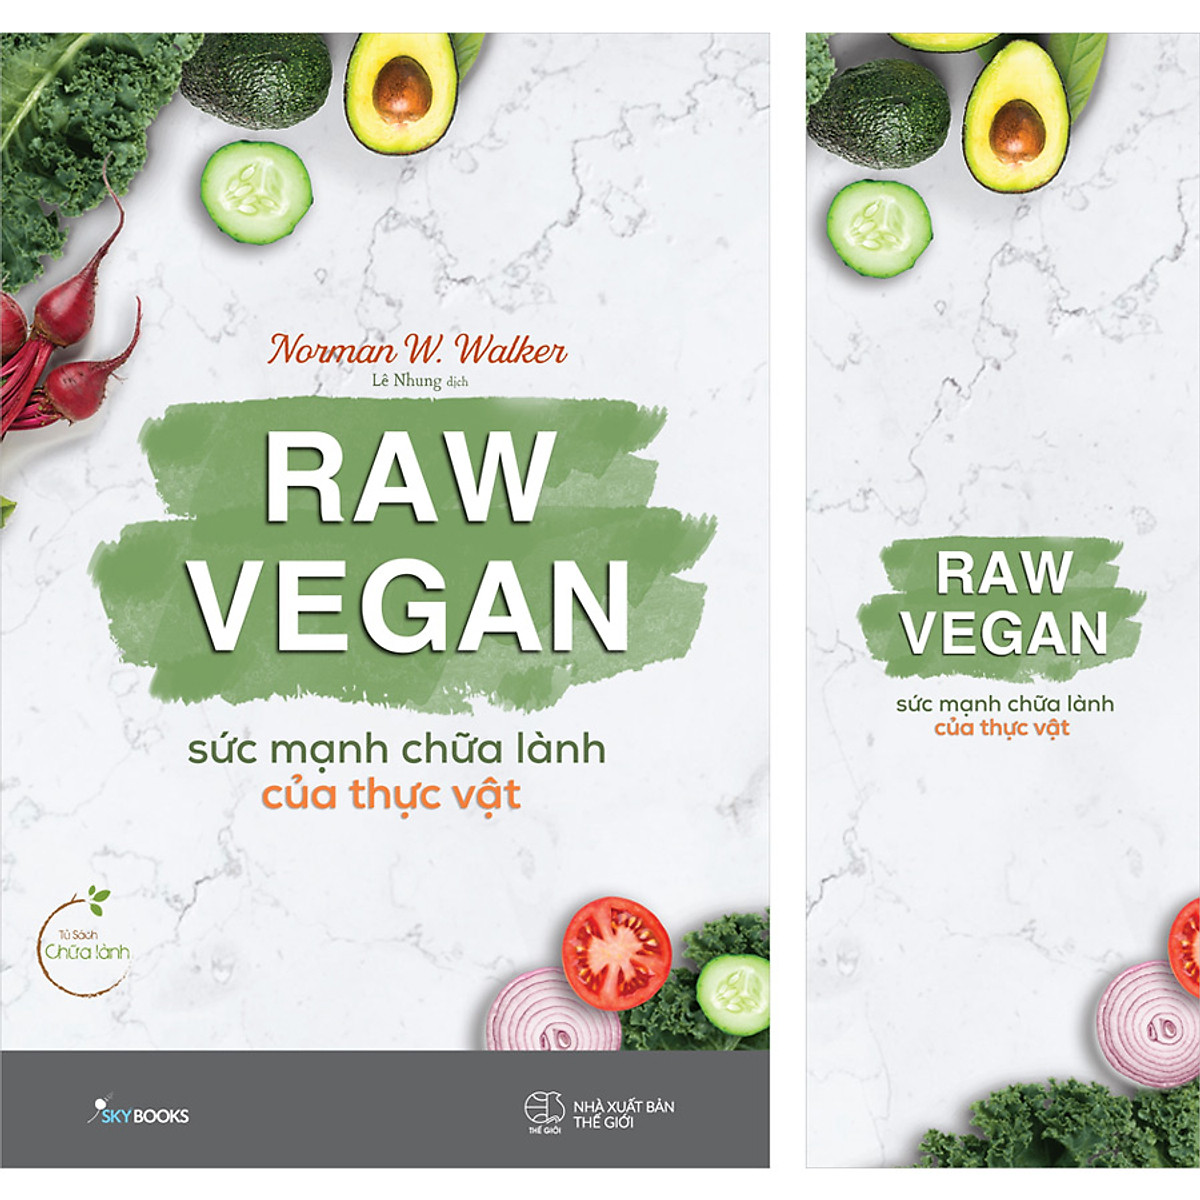 Raw Vegan – Sức Mạnh Chữa Lành Của Thực Vật (Tặng kèm bookmark)